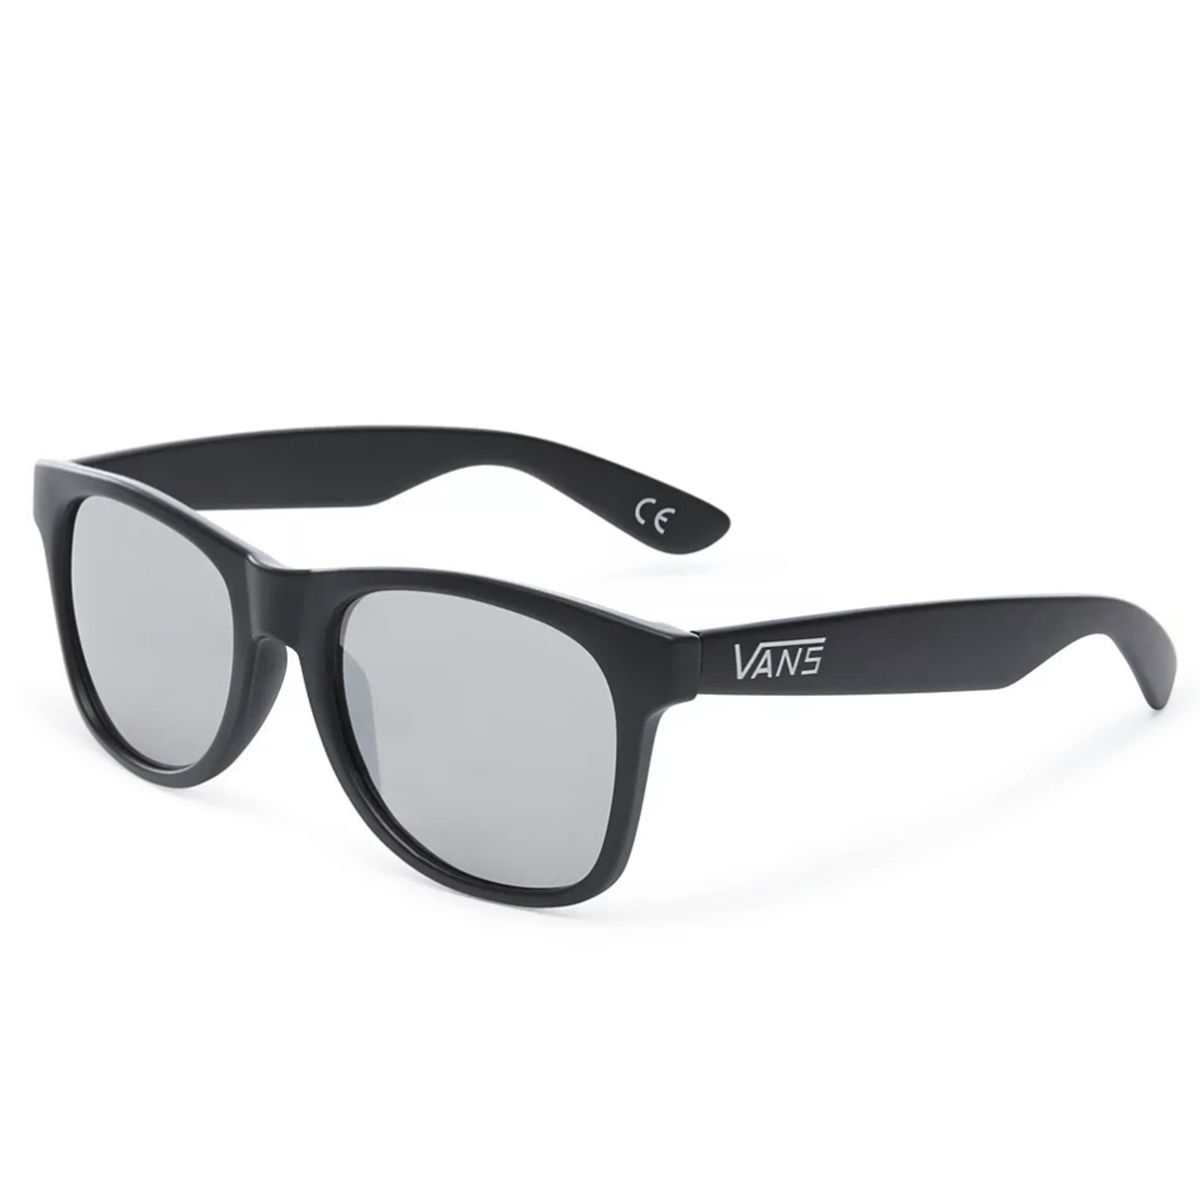 VANS Sunglasses Spicoli 4 Shades Black /